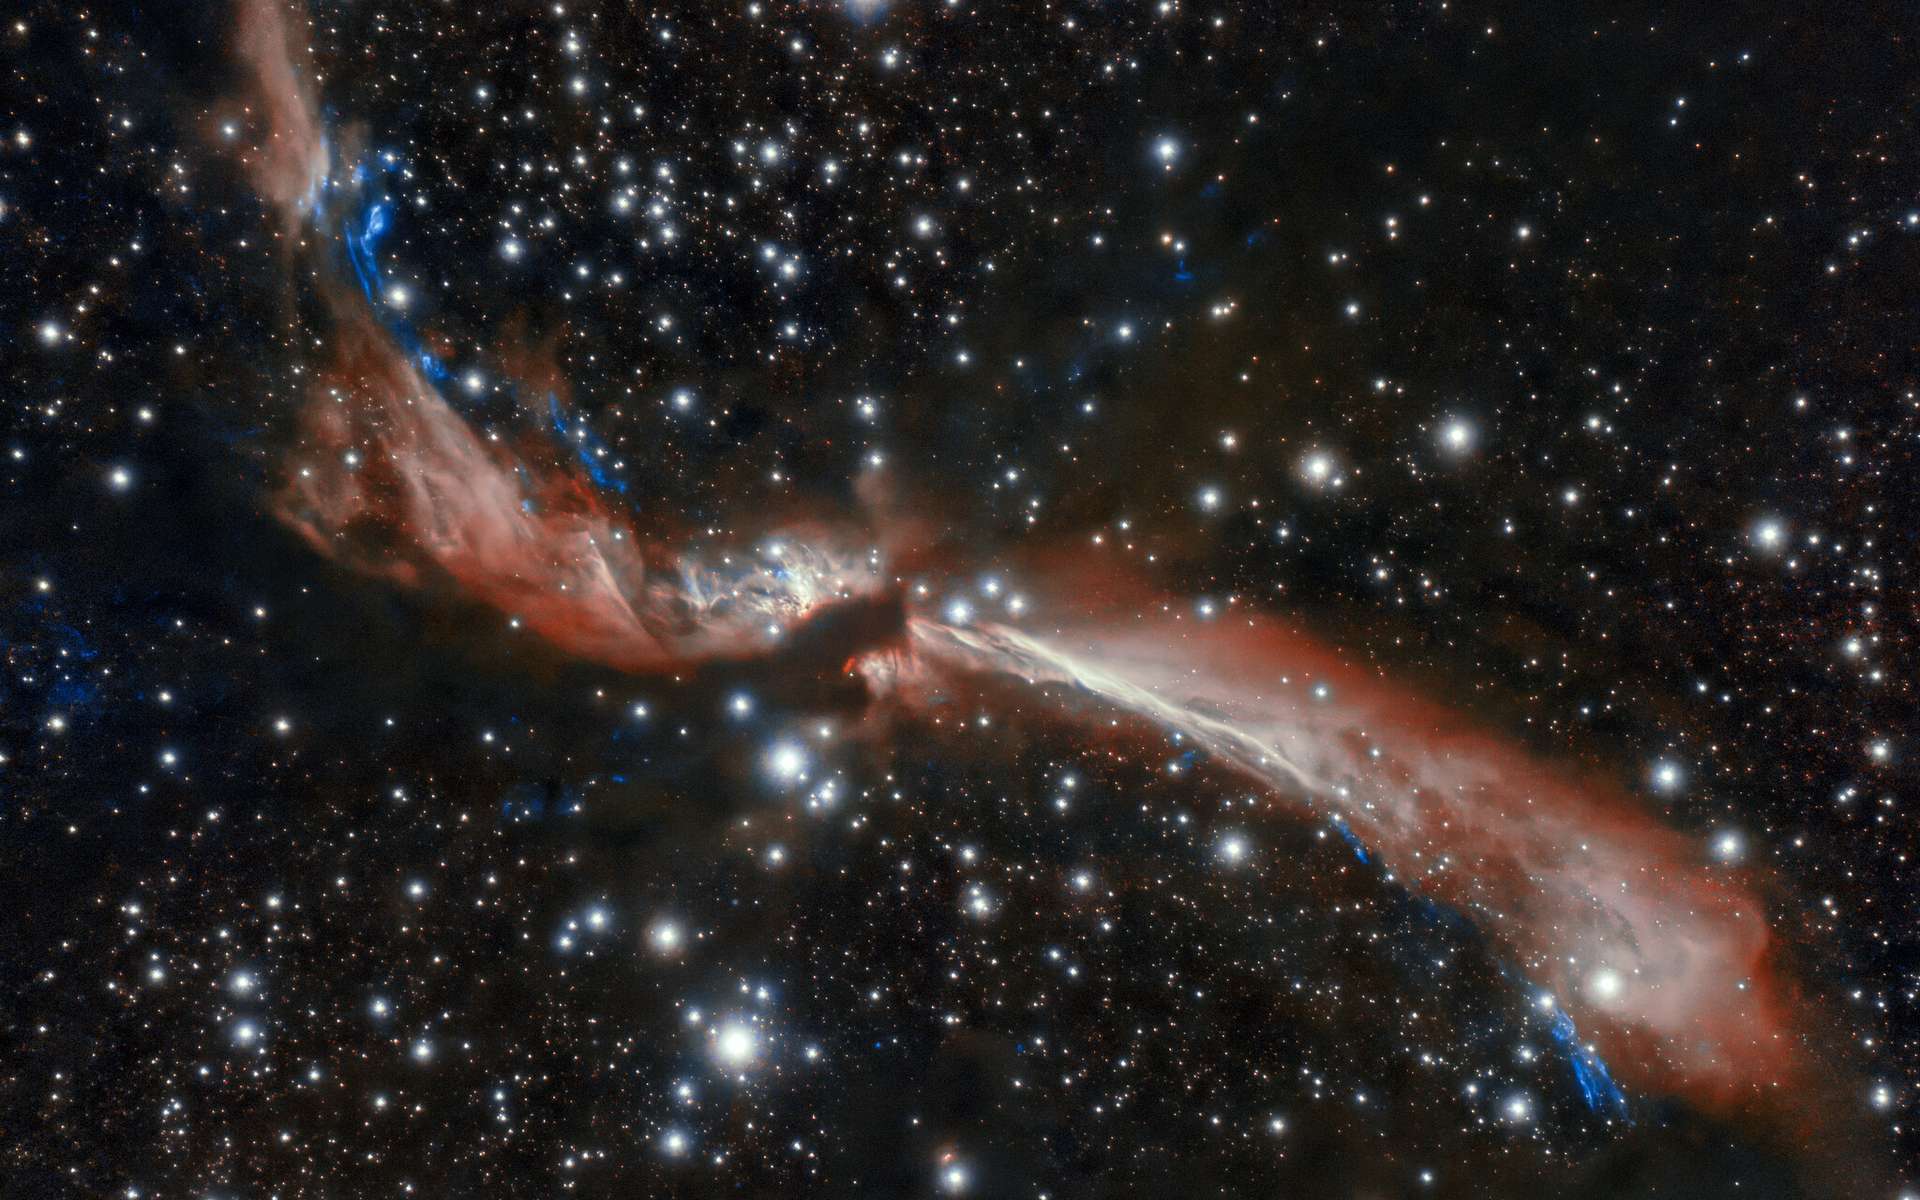 Le jeune jet stellaire sinueux, MHO 2147, semble serpenter à travers un champ d'étoiles dans cette image capturée au Chili par l'Observatoire international Gemini, un programme du NOIRLab de la NSF. © International Gemini Observatory, NOIRLab, NSF, AURA